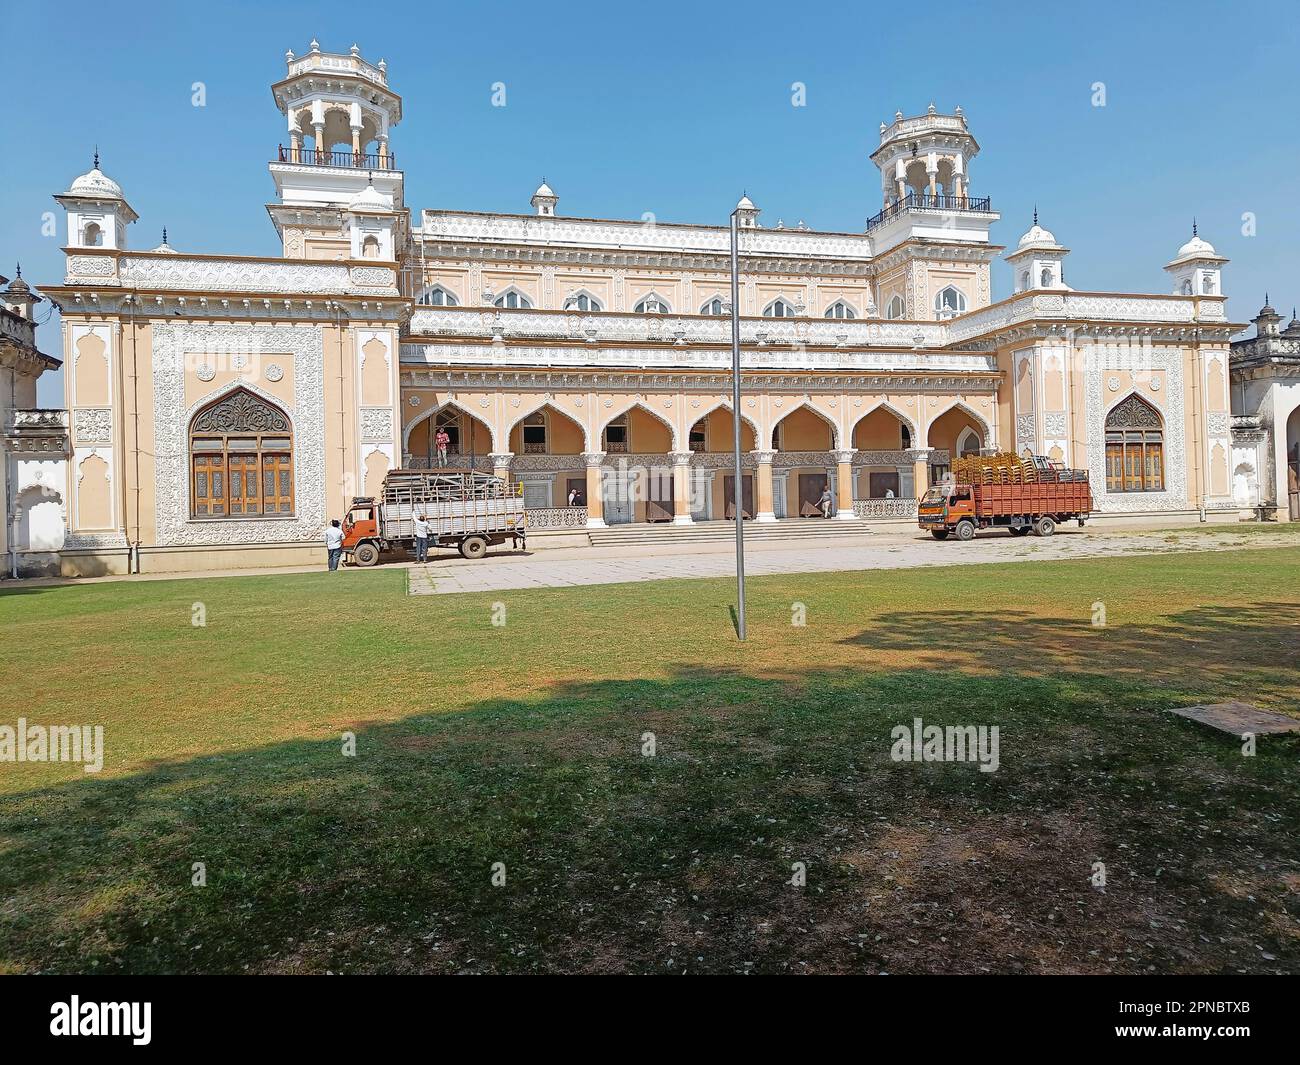 Il Palazzo di Chowmahalla a Hyderabad, in India, presenta uno splendido esempio di architettura reale, caratterizzata da una miscela di St. Europee, Mughal e Indo-Islamiche Foto Stock